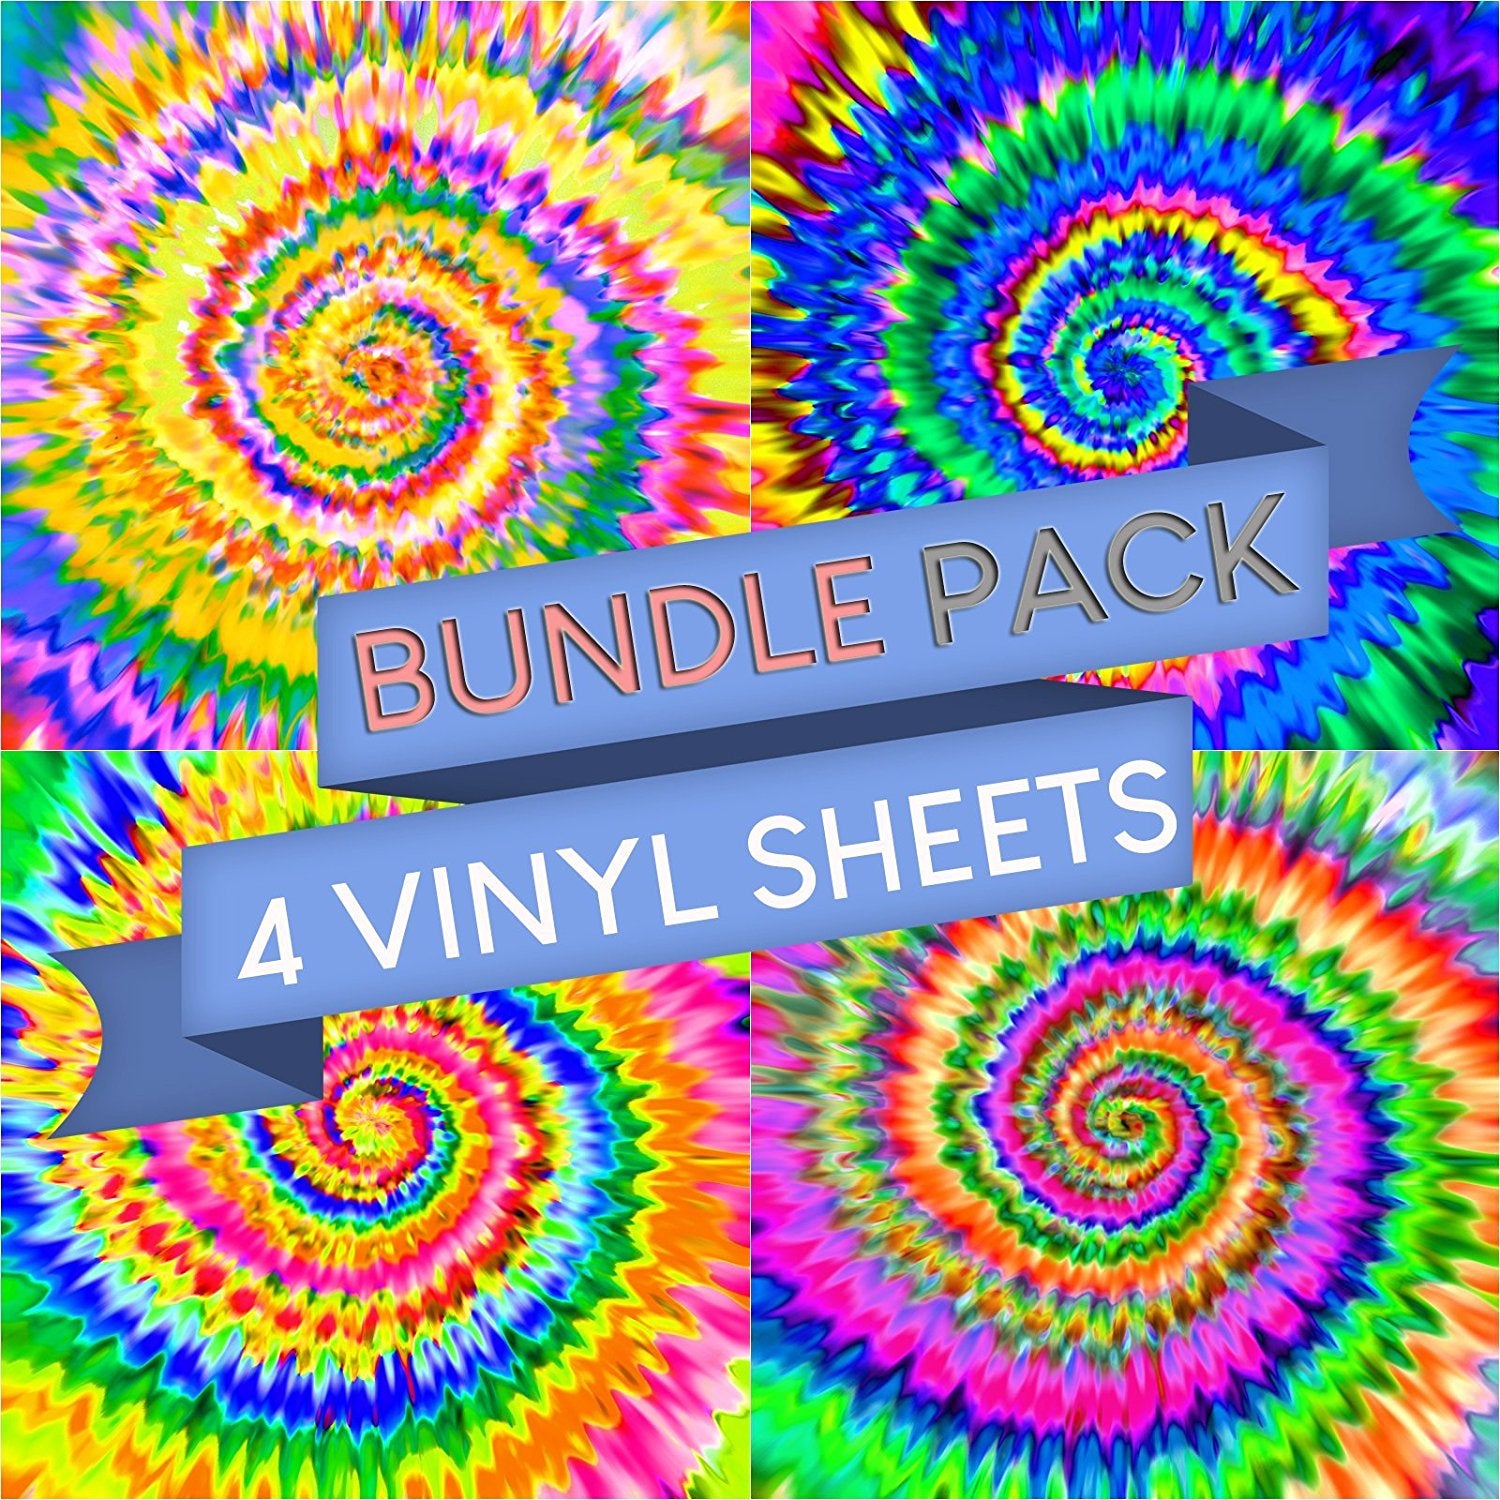 Tie Dye Patterns Vinyl Sheets - Pack of 4 - Vinyl Boutique Shop